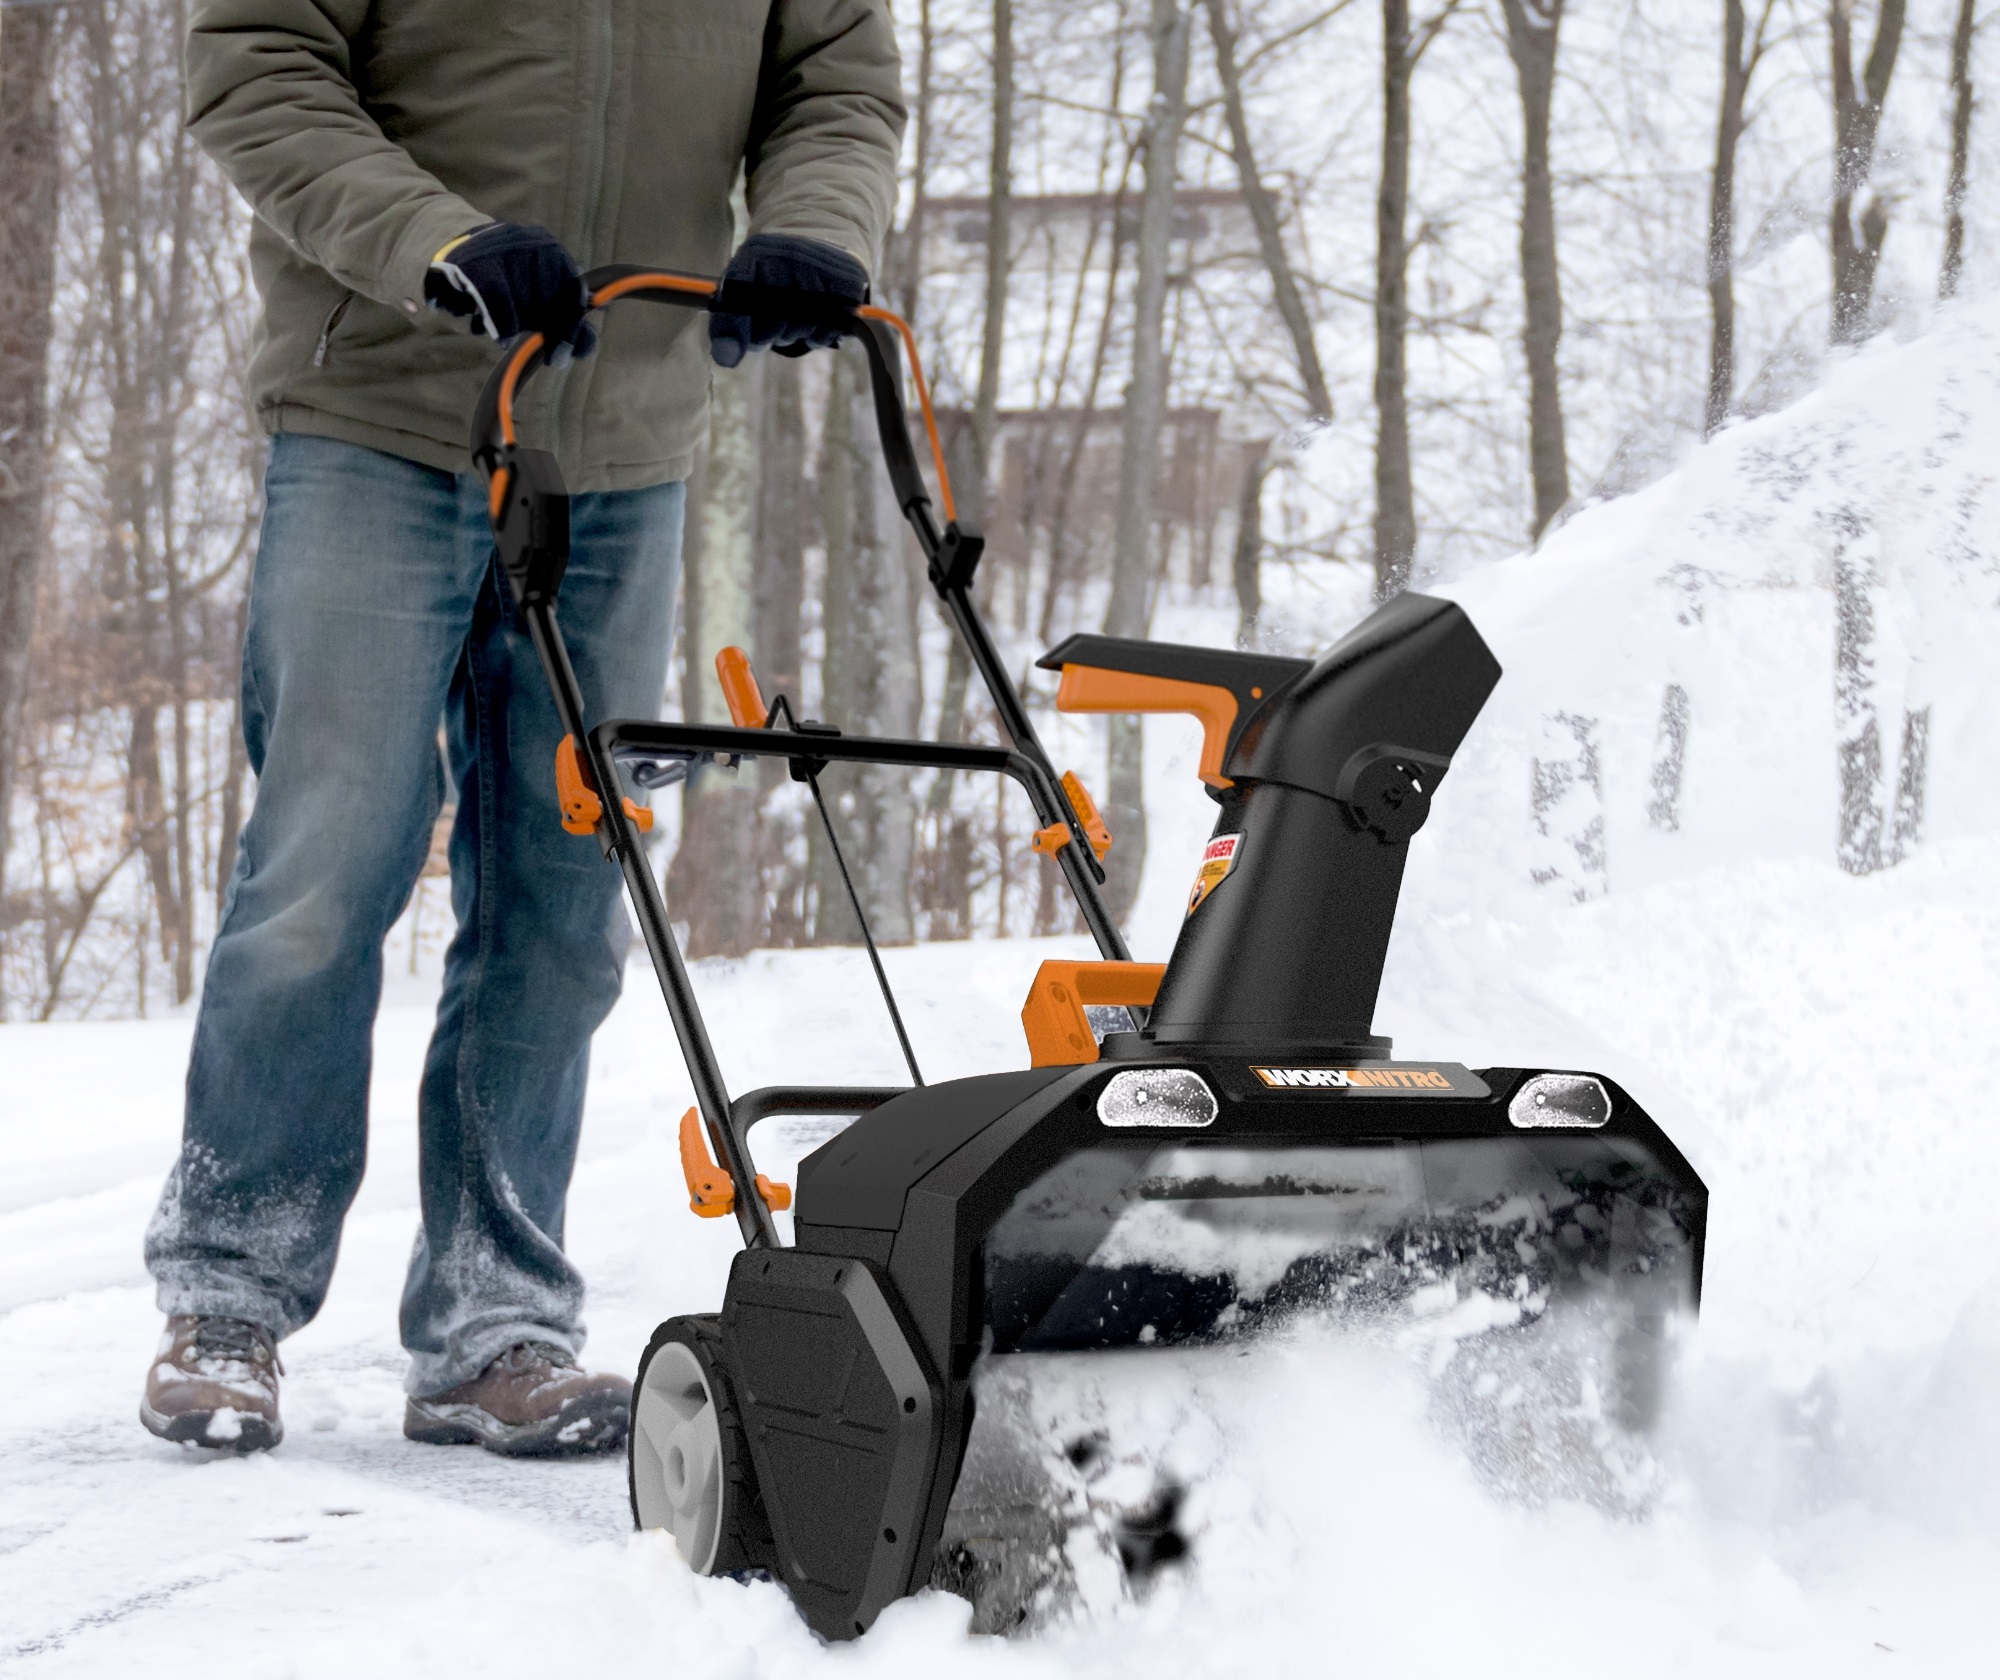 40V 12 Cordless Snow Shovel & 4.0 Ah Battery